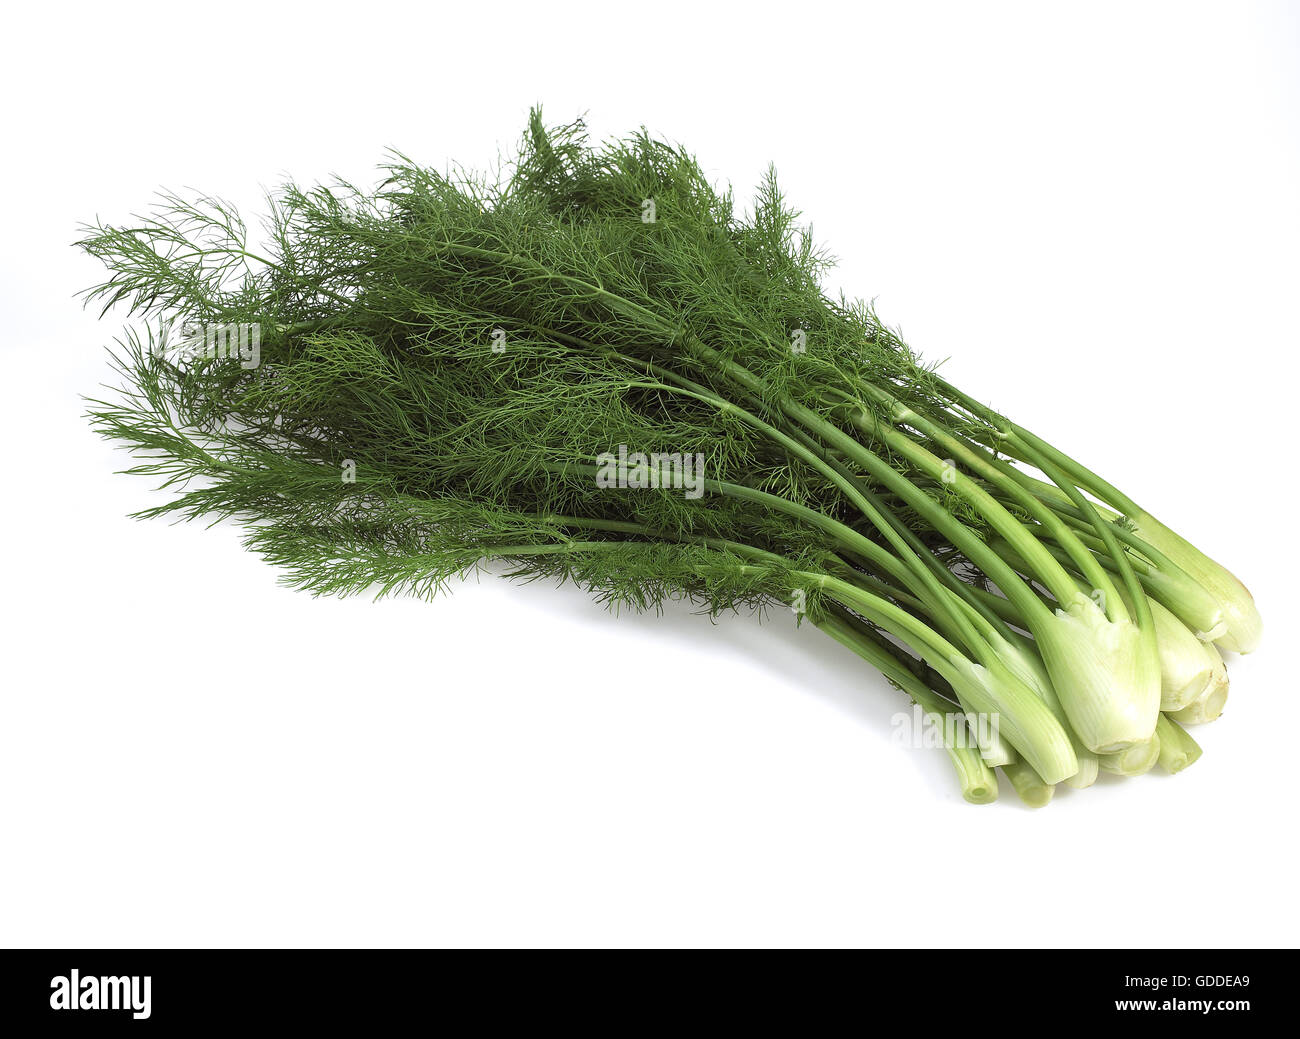 Little Fennel, foeniculum vulgare, Vegetables against White Background Stock Photo